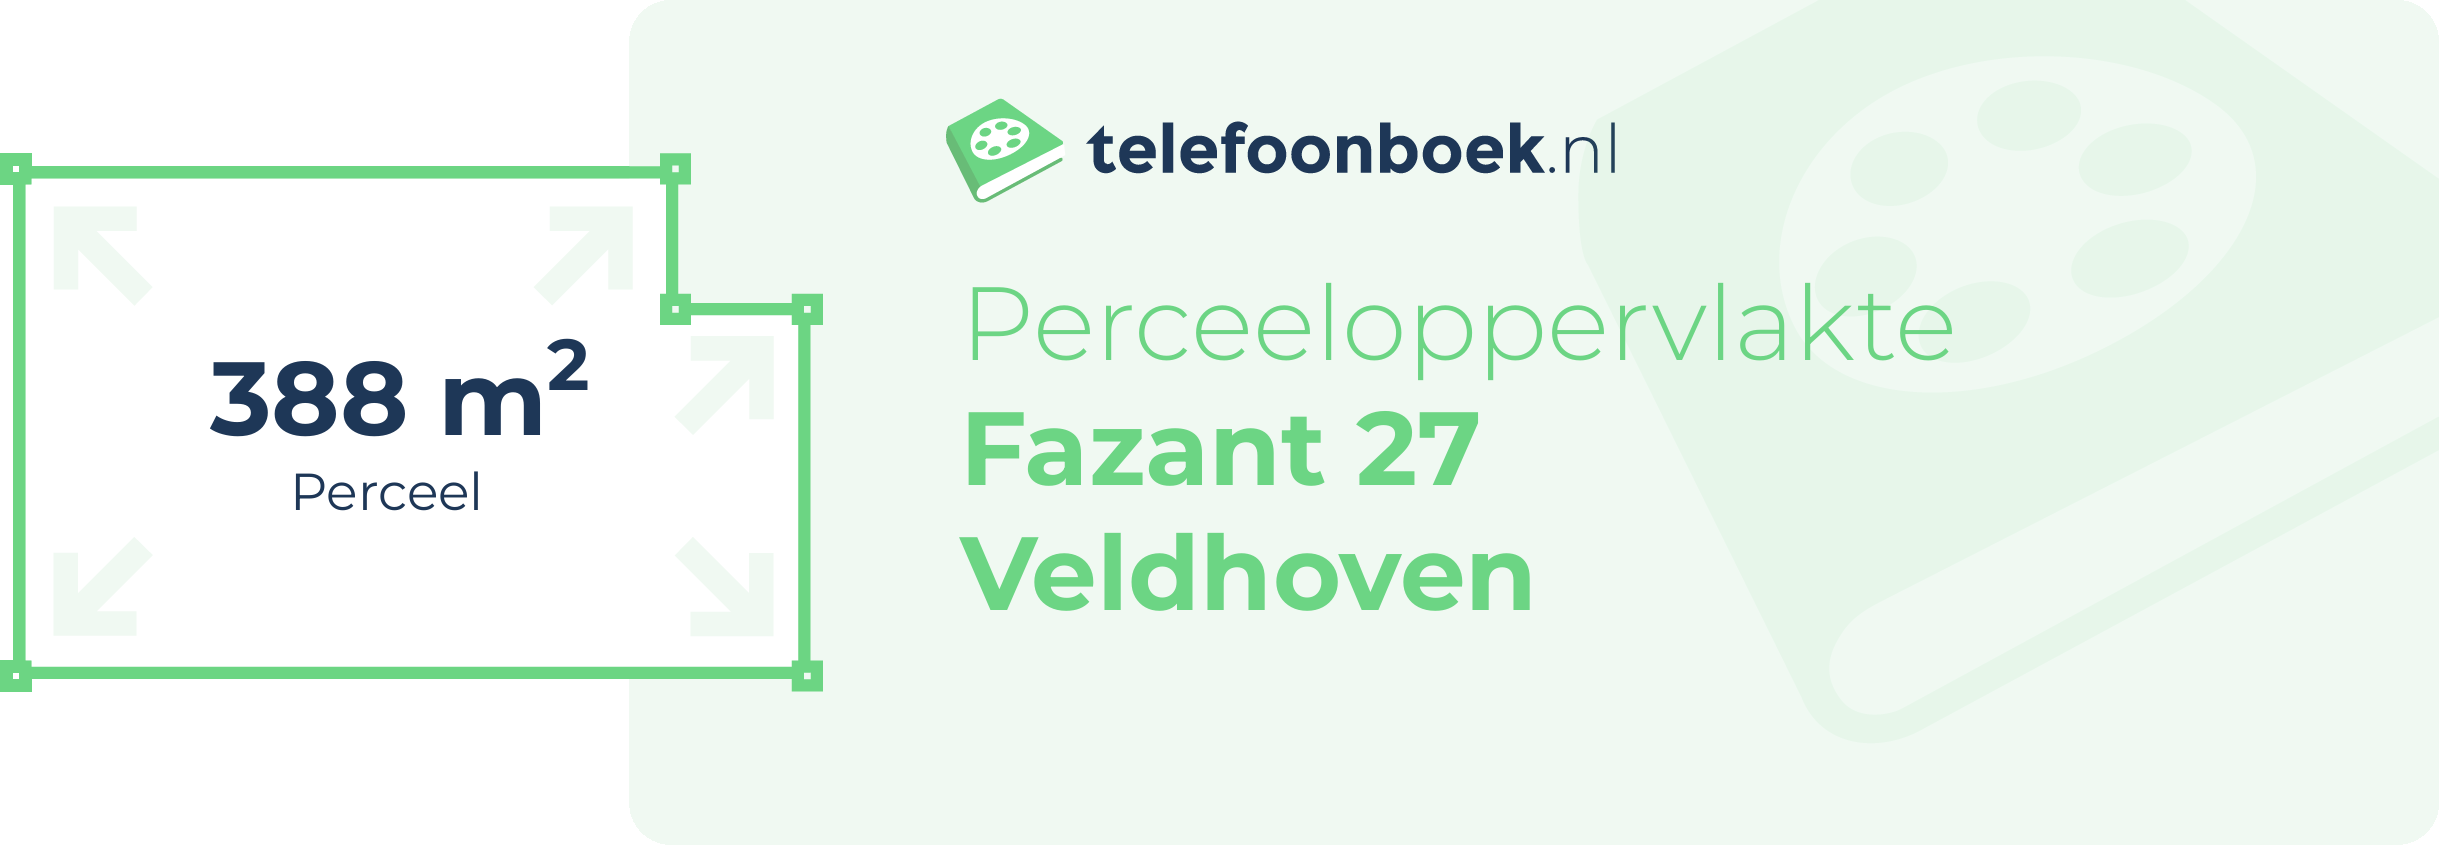 Perceeloppervlakte Fazant 27 Veldhoven